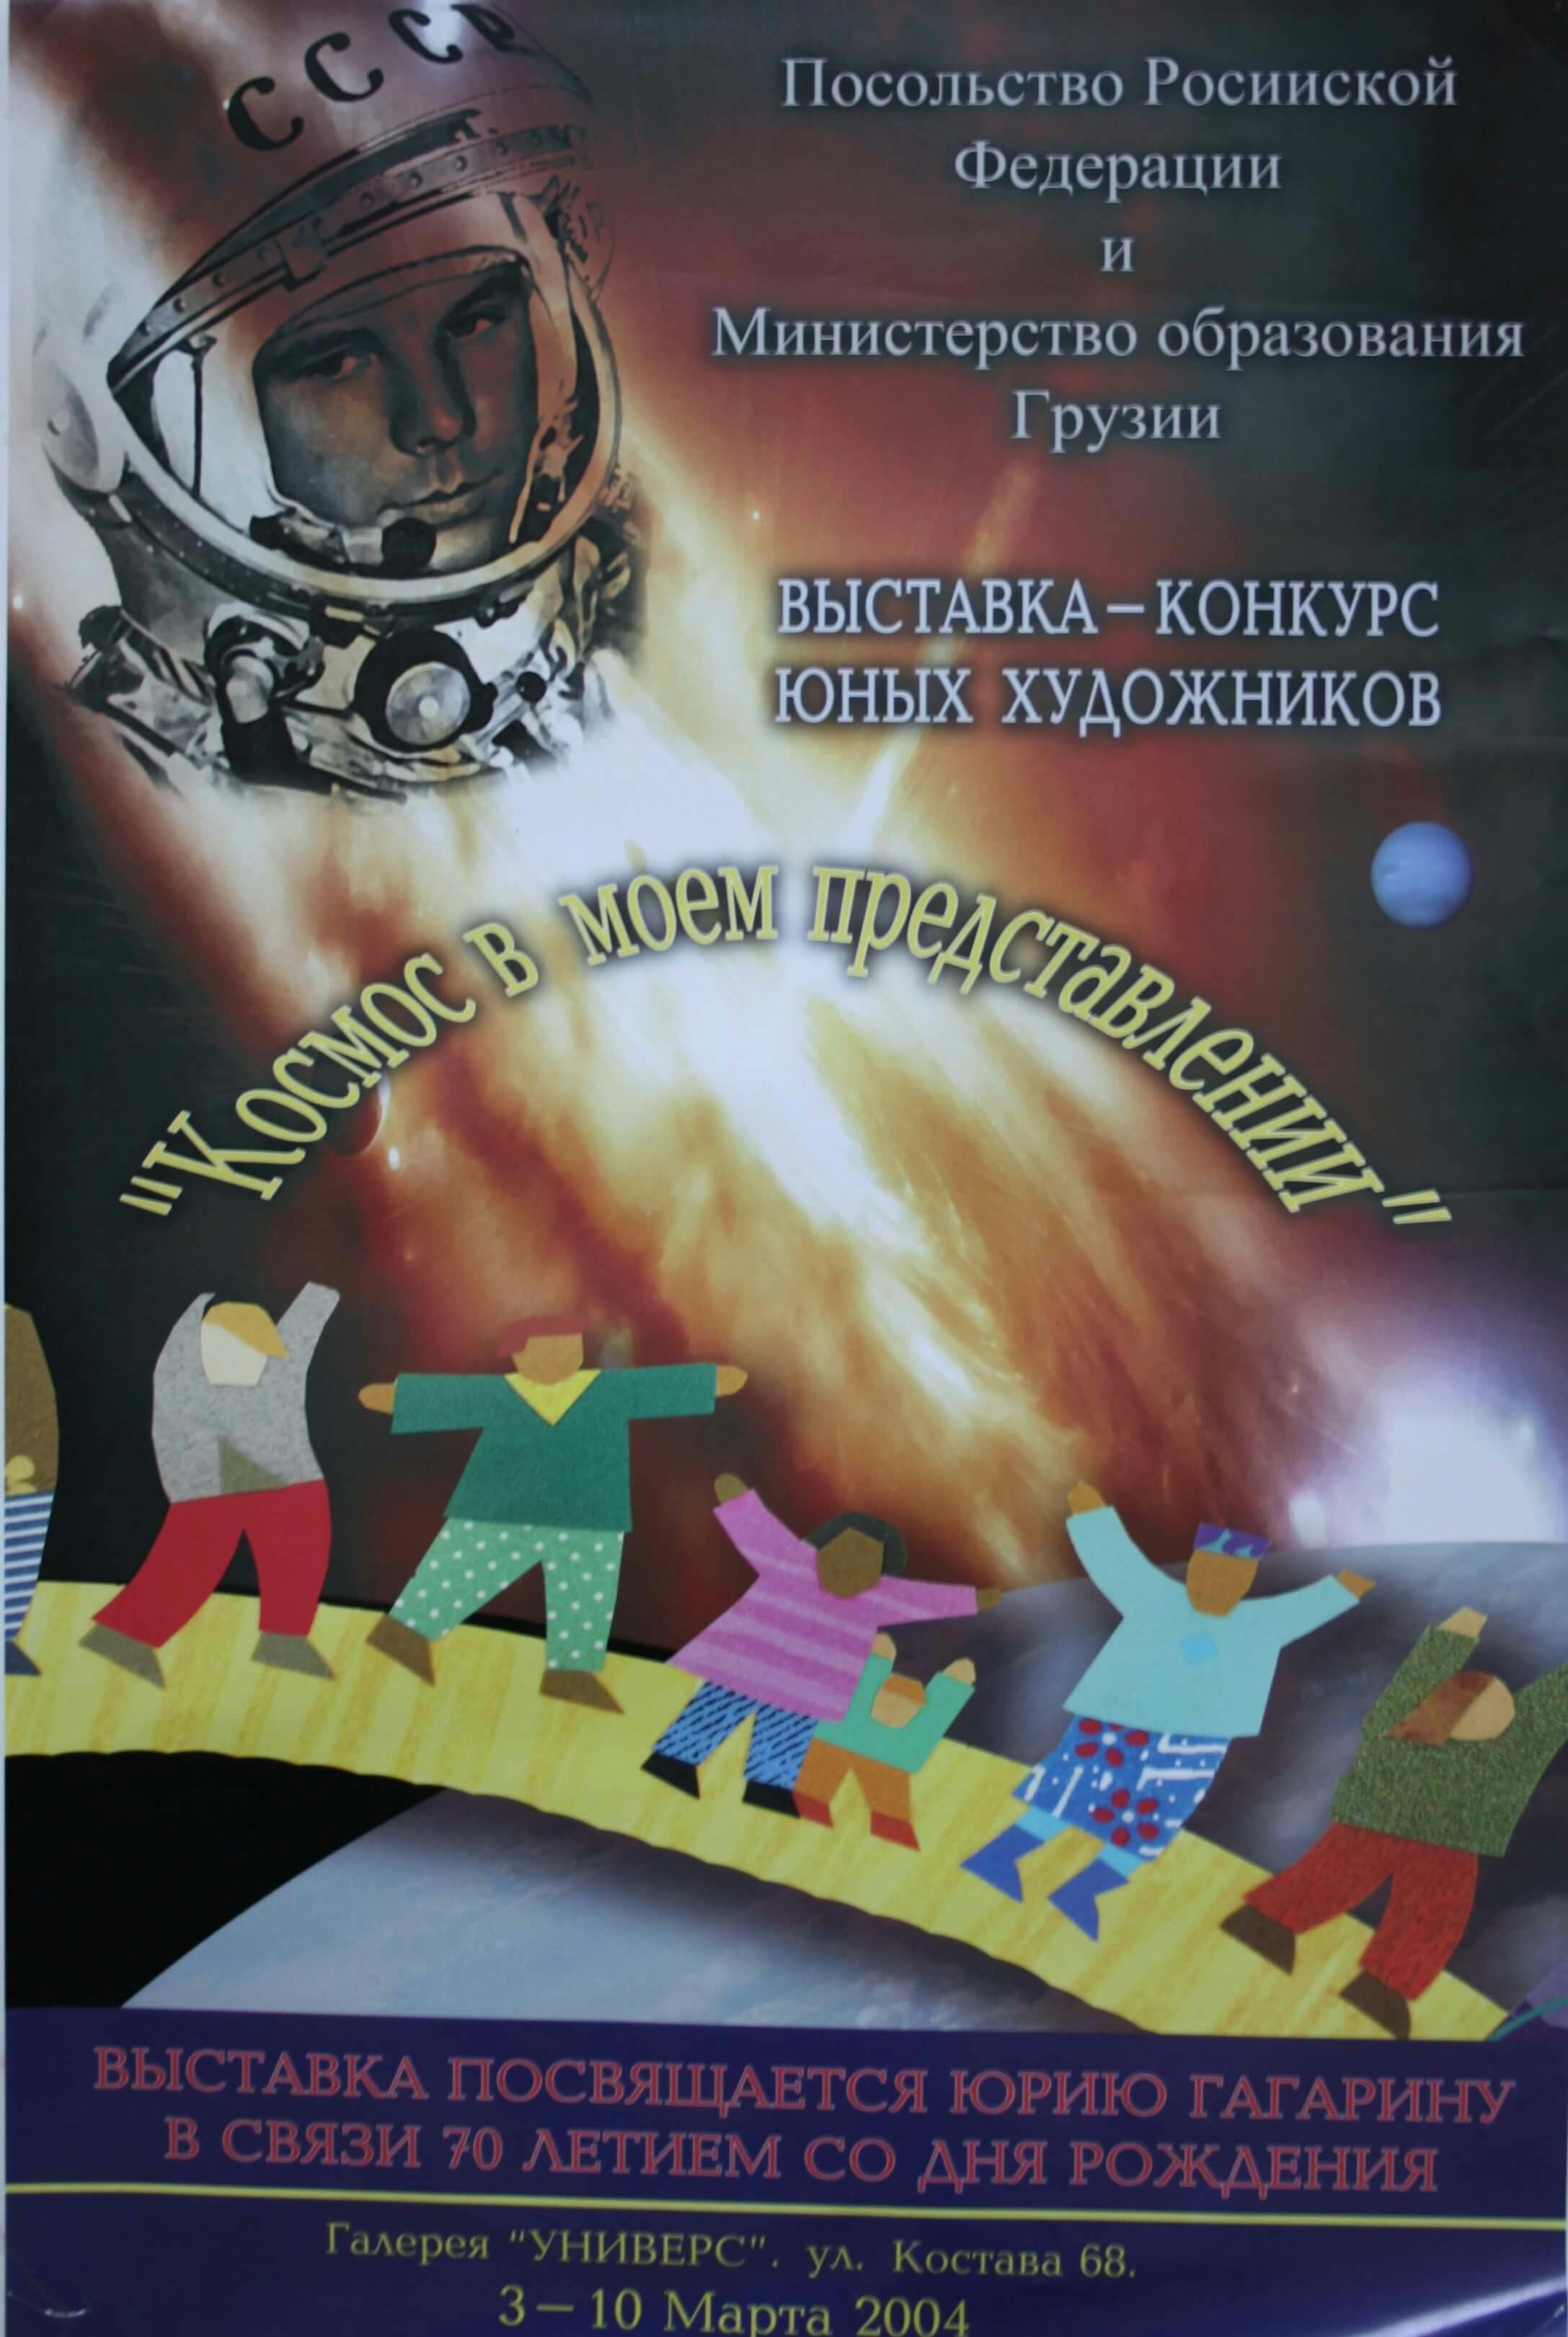 ახალგაზრდა მხატვრების გამოფენა "კოსმოსი ჩემი წარმოდგენით", 3-10 მარტს, 2004 წ